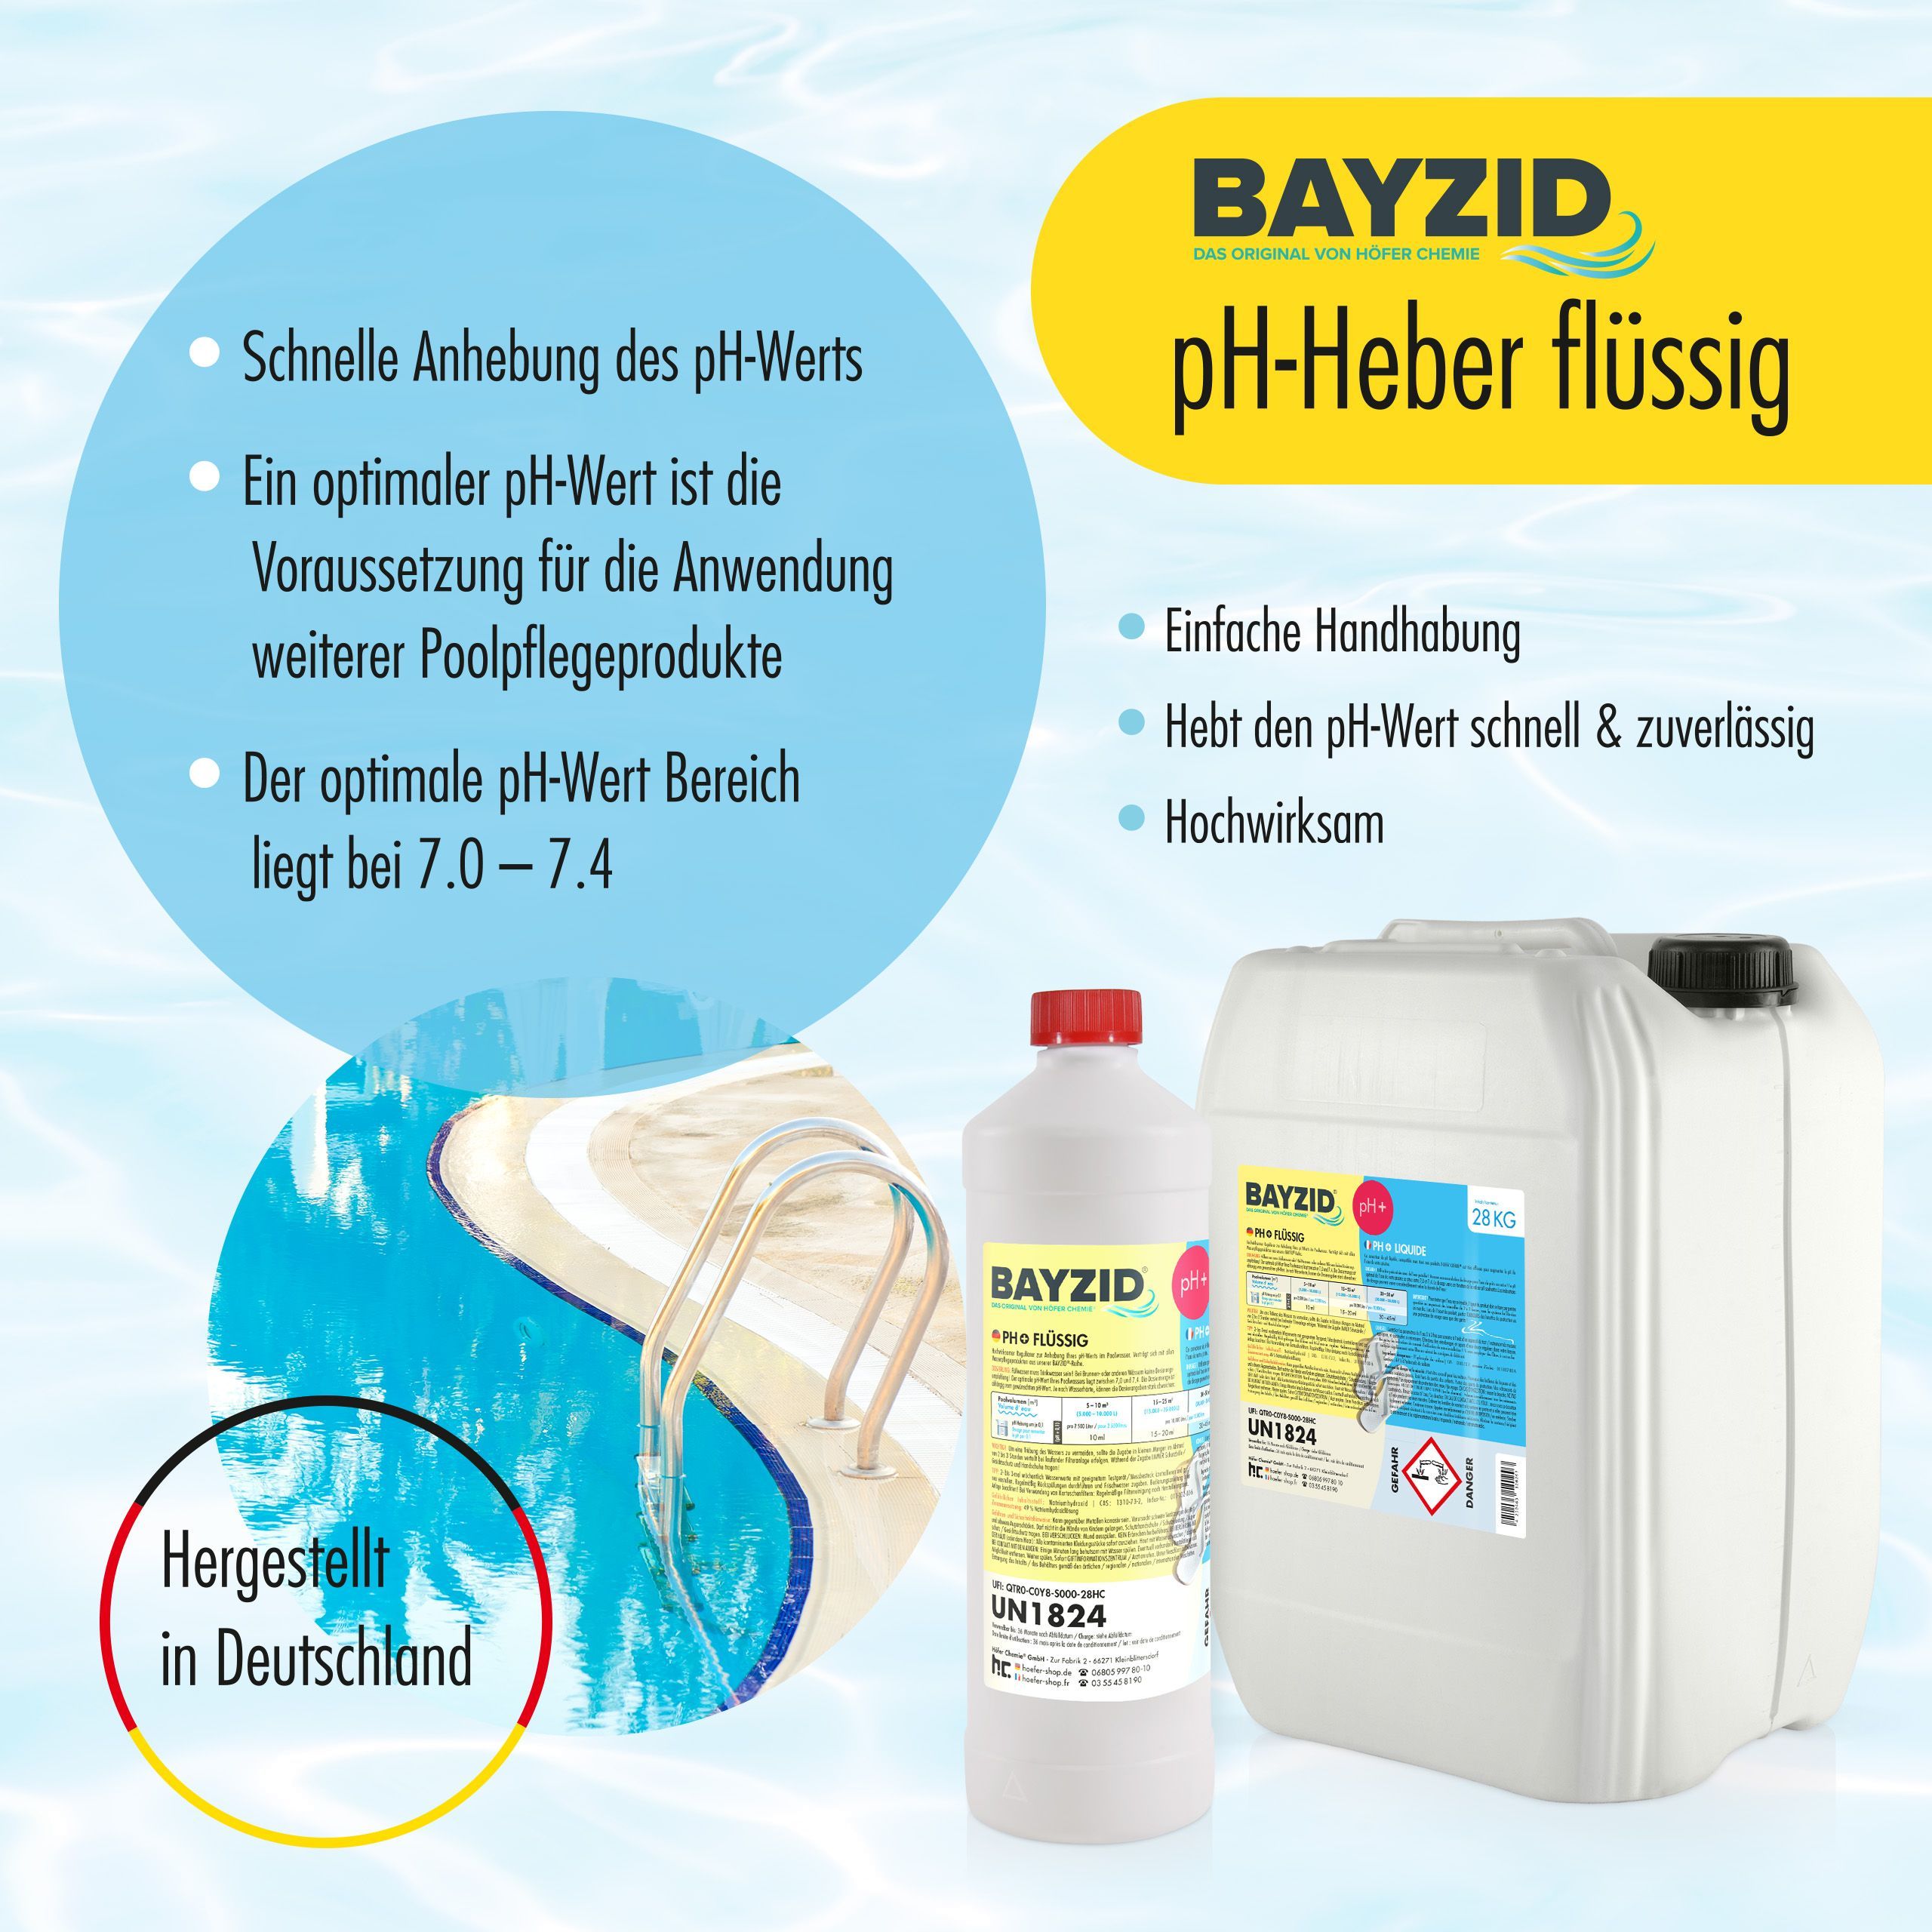 7 kg BAYZID® pH Plus liquide pour piscines en bidons pratiques